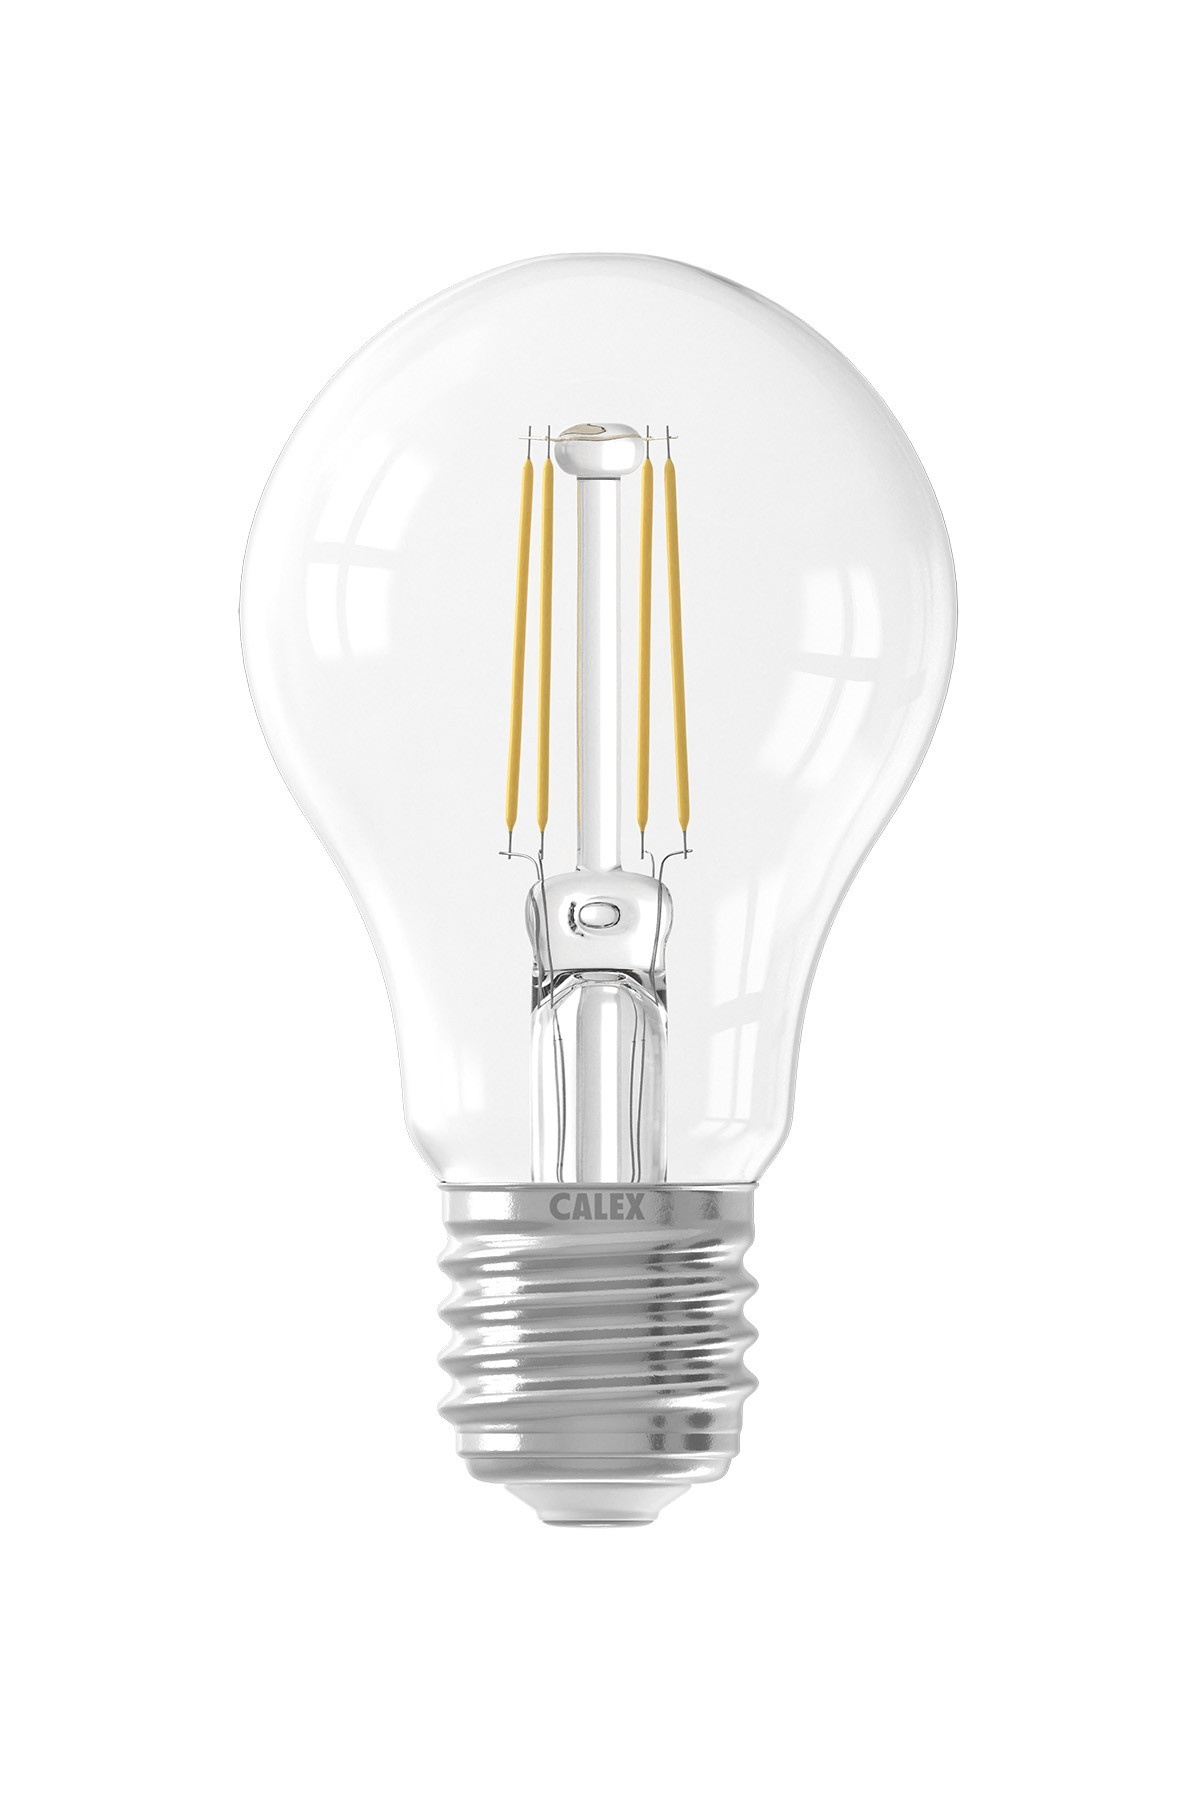 enthousiasme Blazen schandaal Calex Filament Lamp met Schemersensor - E27 - 470 Lm - Zilver -  Lightexpert.nl